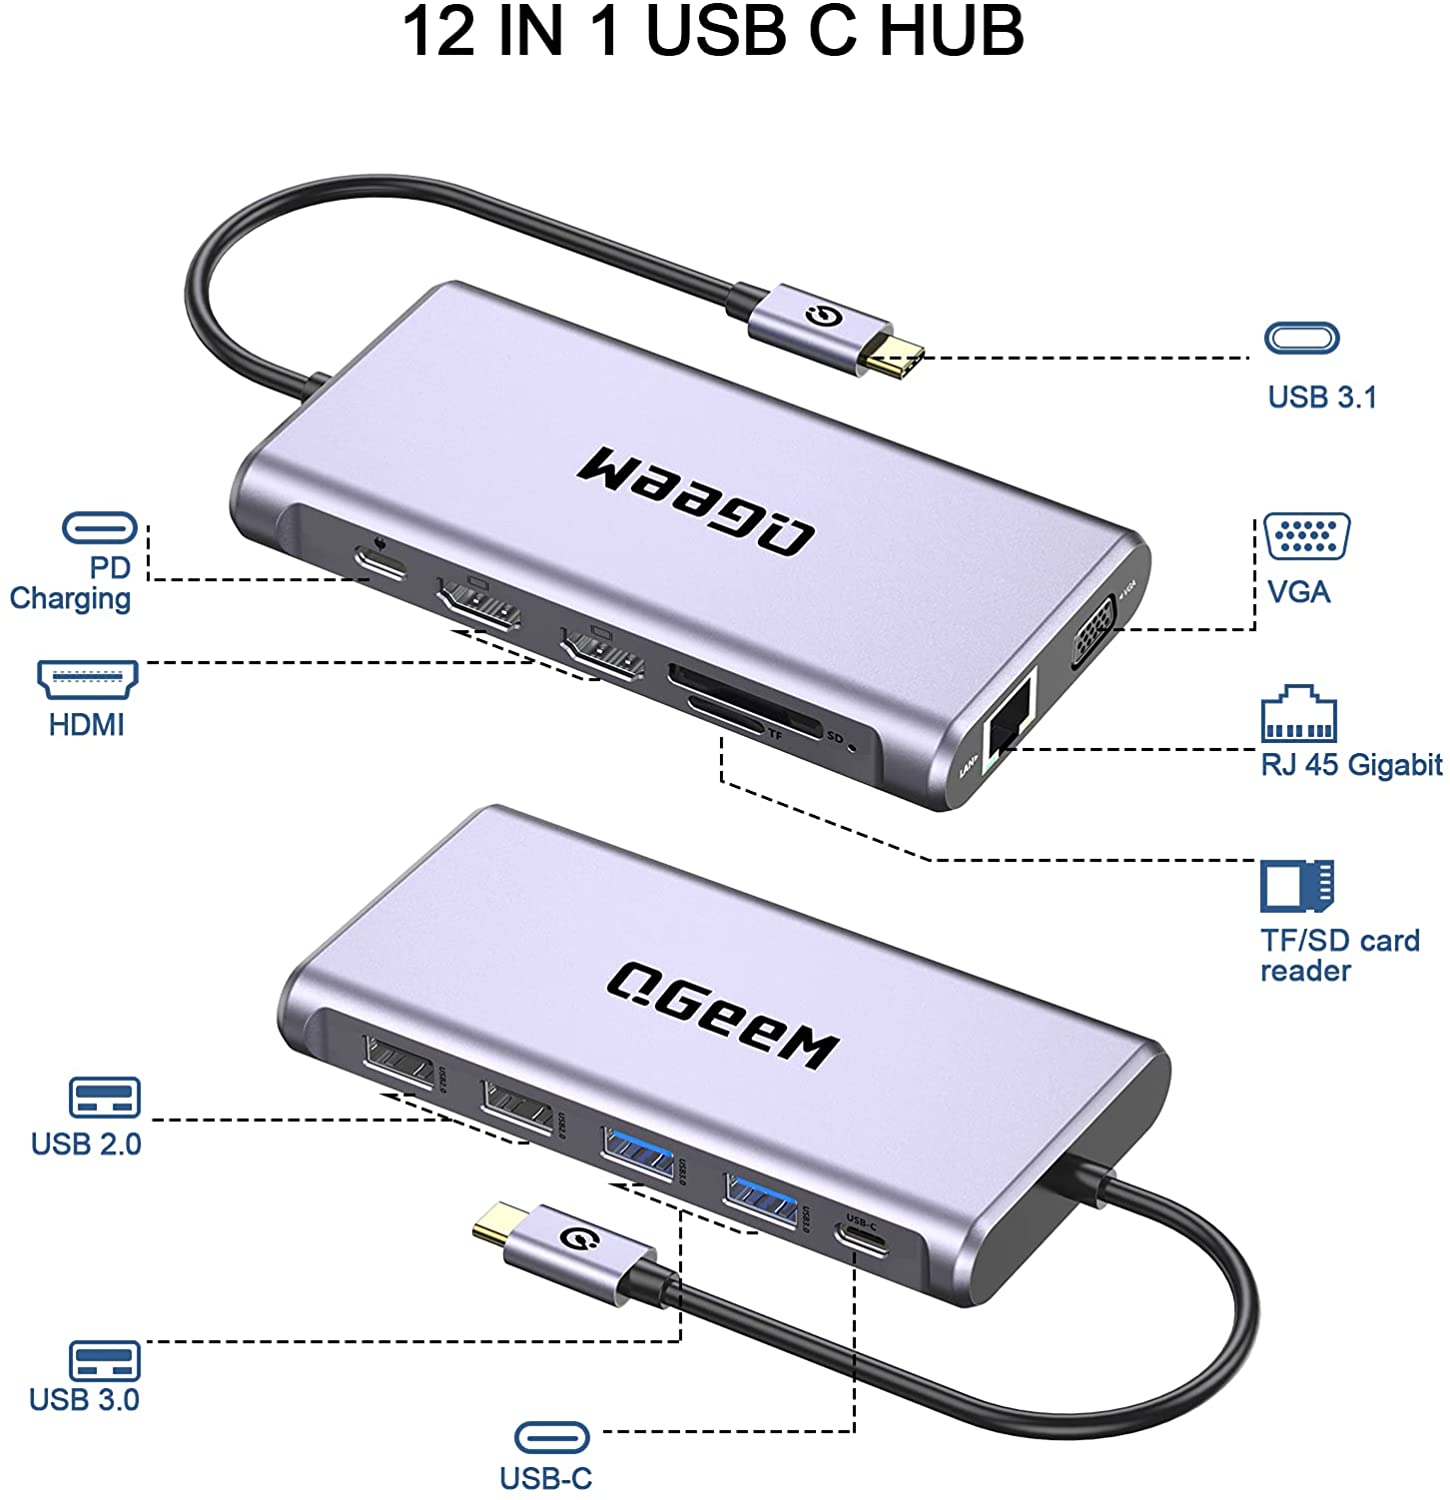 Adaptateur USB 3.0 HDMI USB 4K HDMI de type C 3.1 Algeria